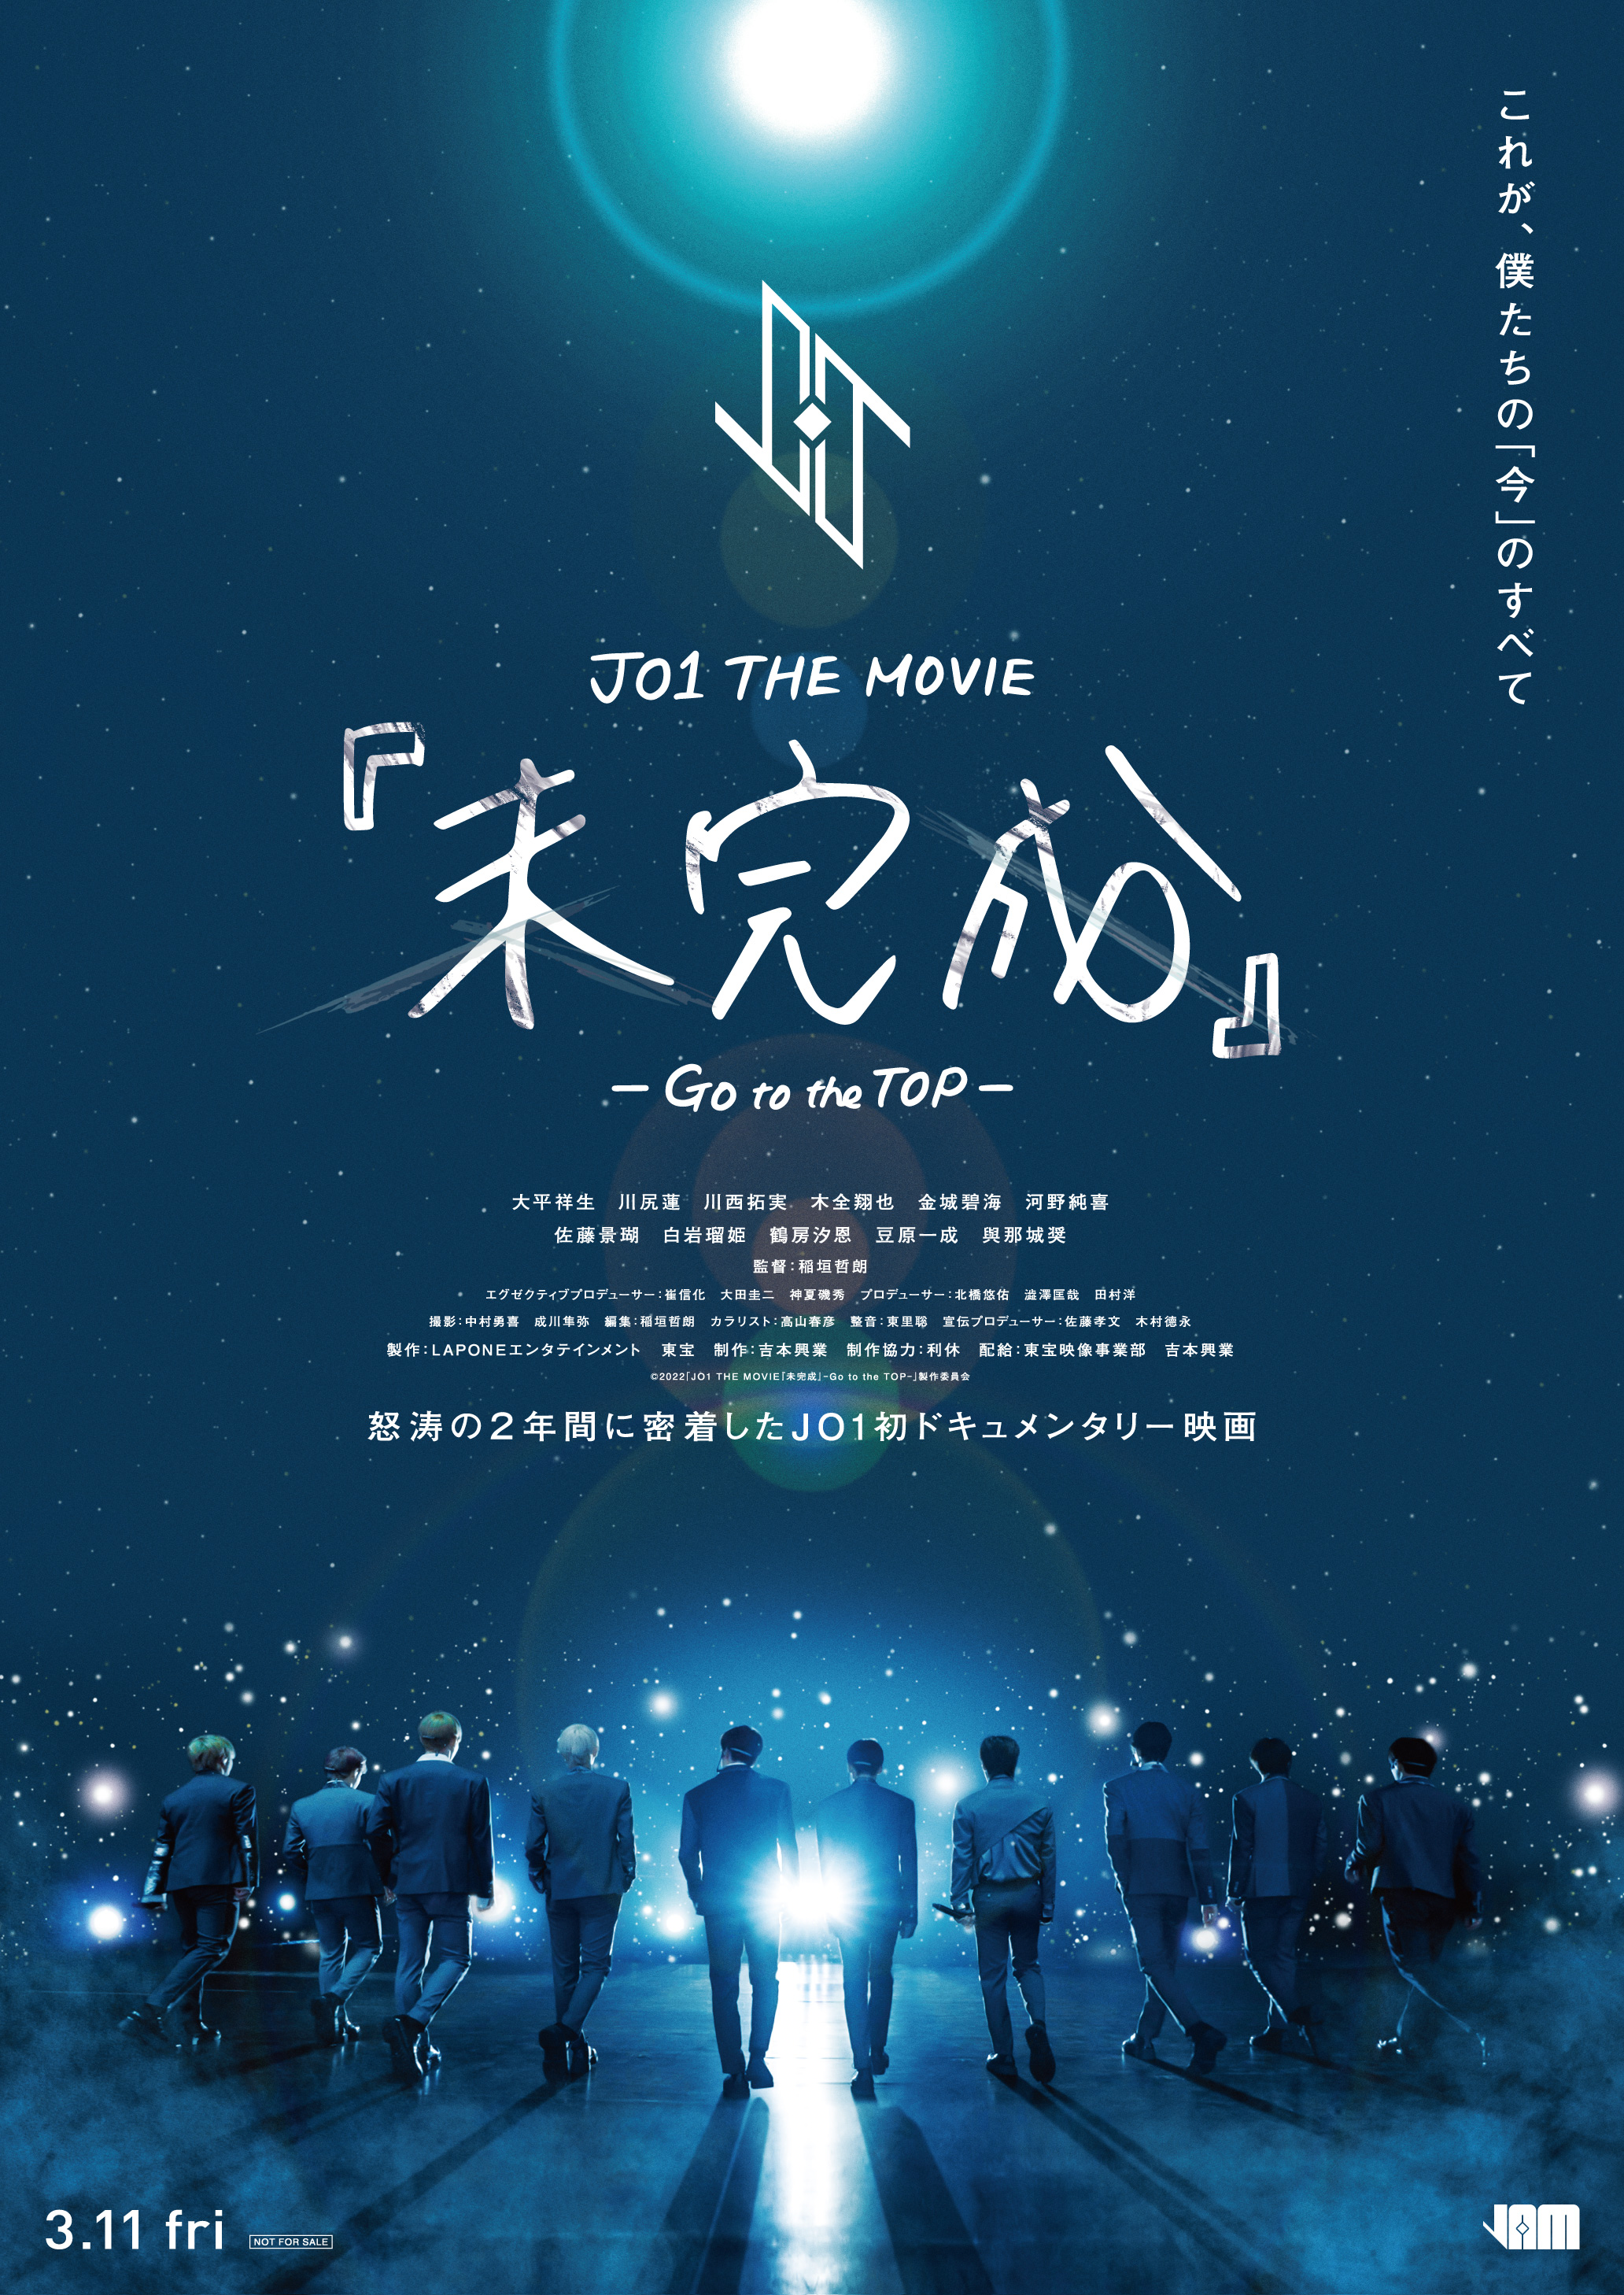 JO1 ドキュメンタリー映画 JO1 THE MOVIE『未完成』-Go to the TOP 